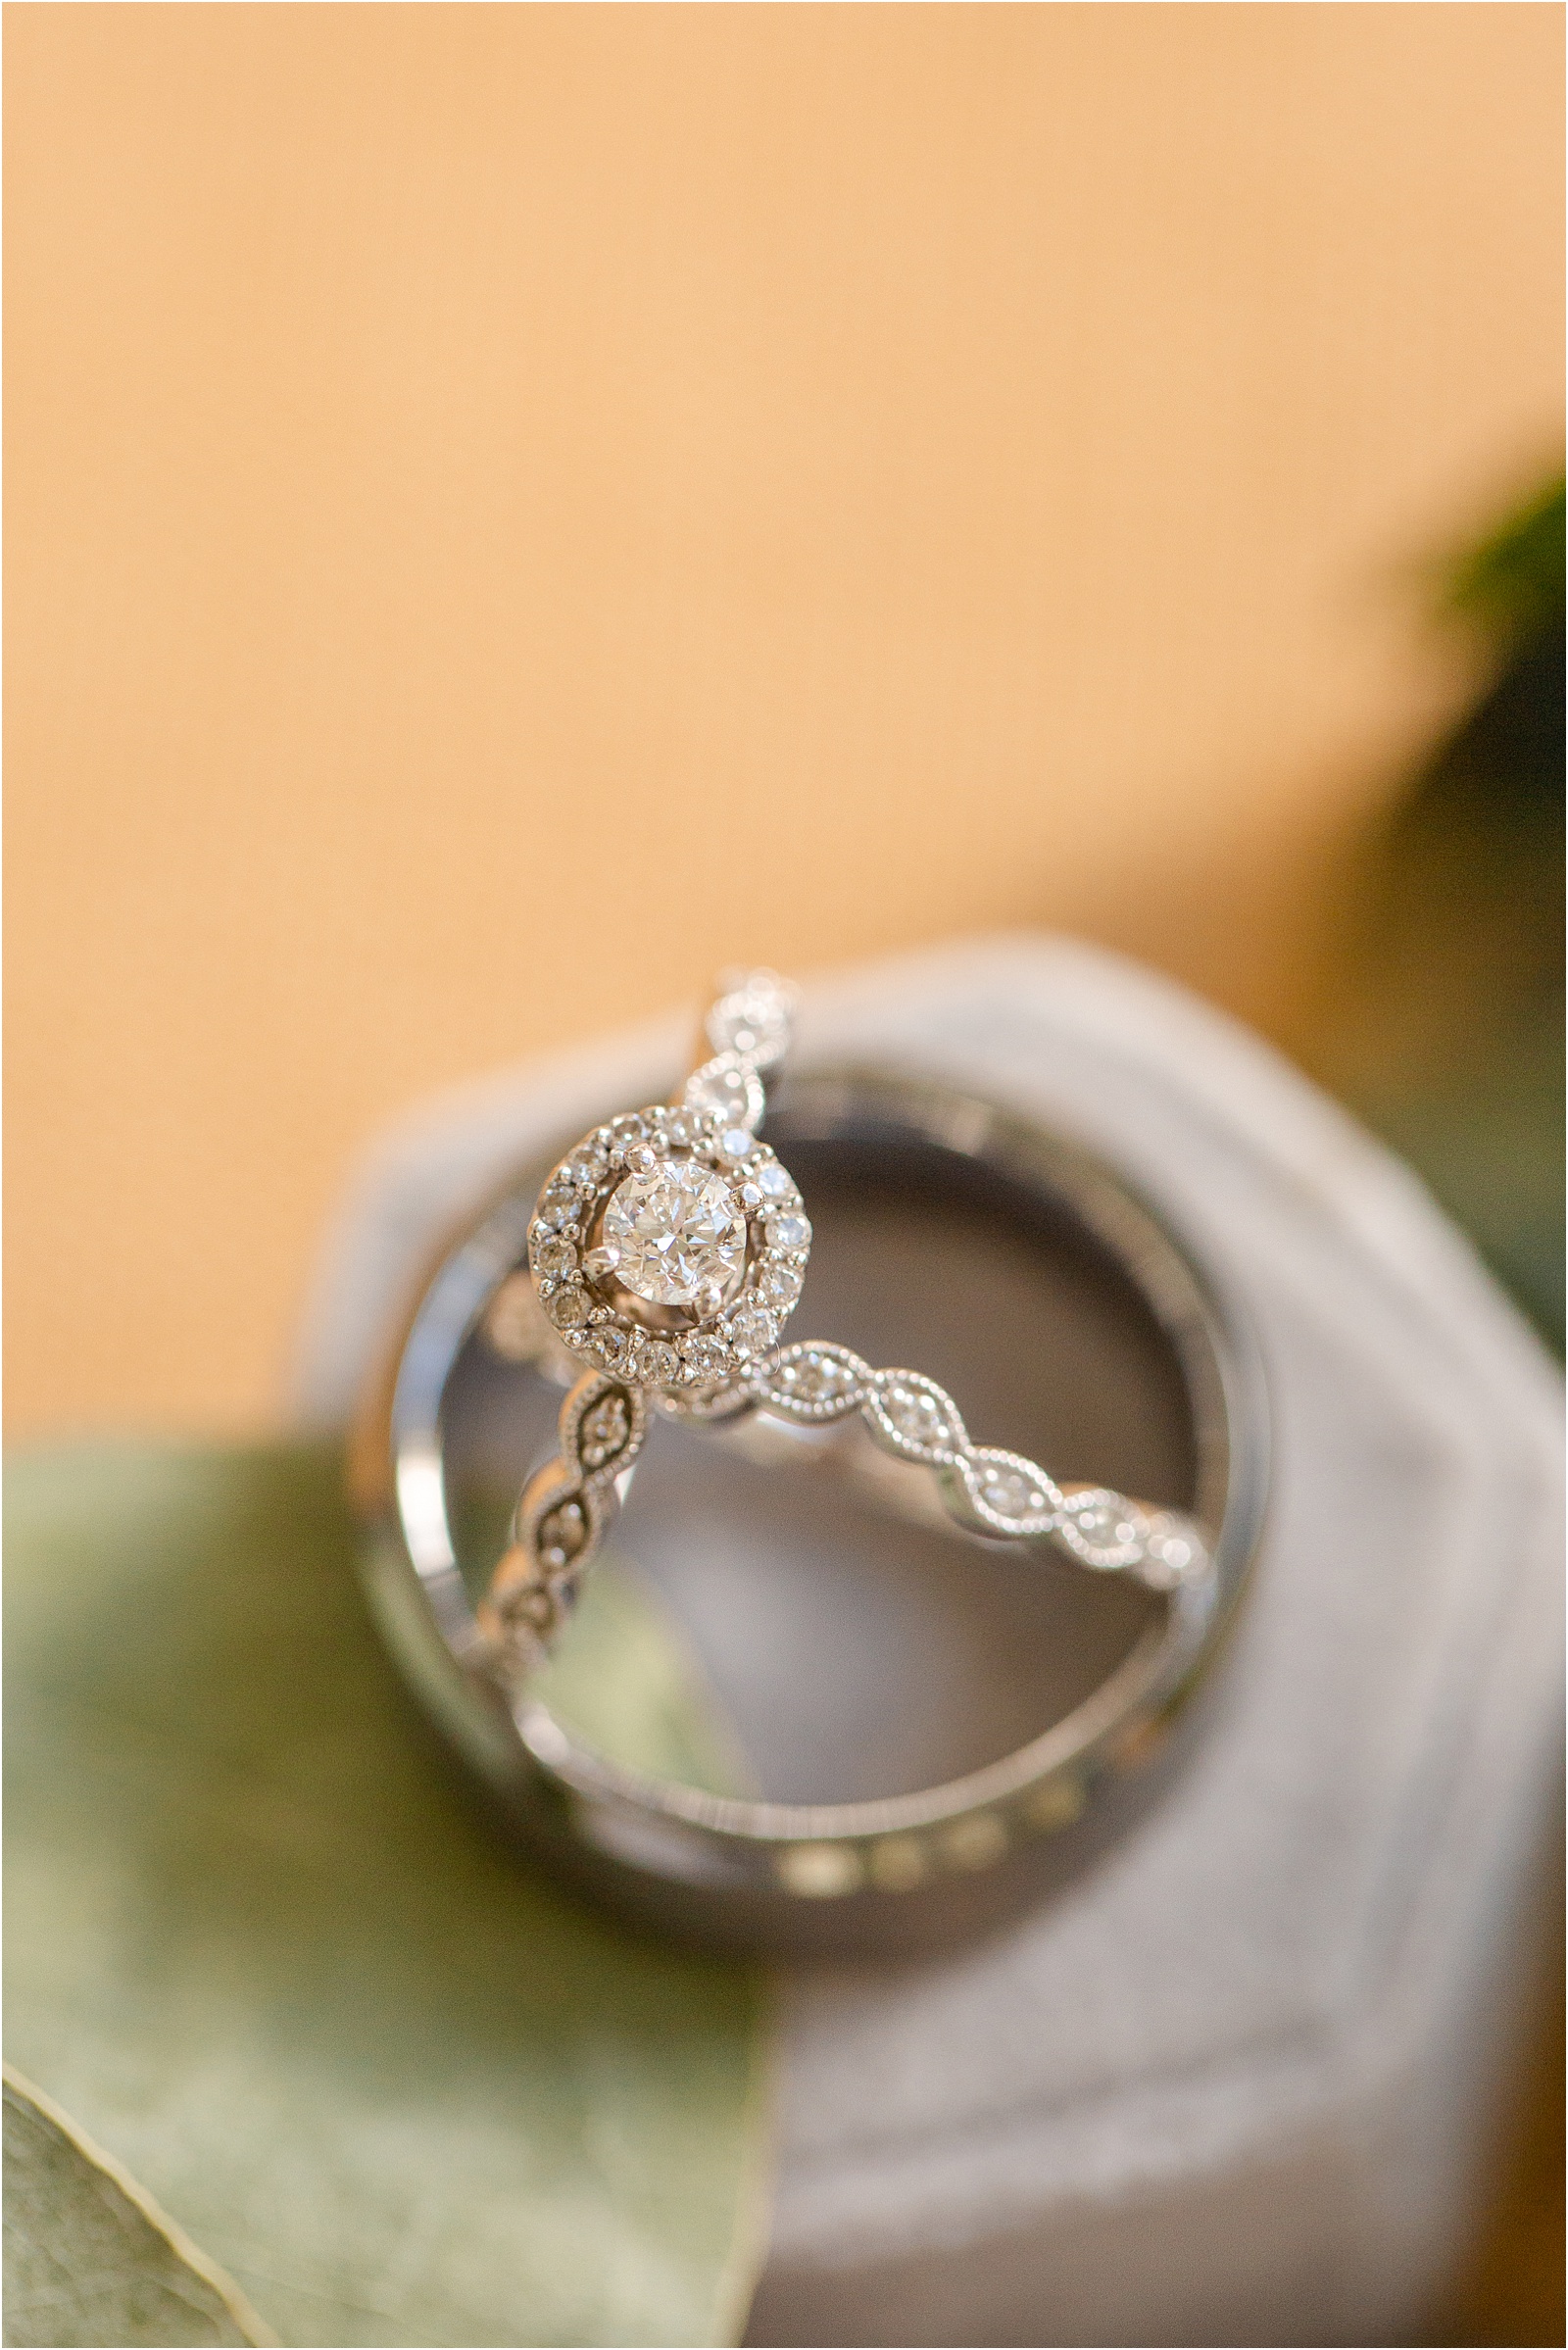 Diamond engagement ring inside of men's wedding ring